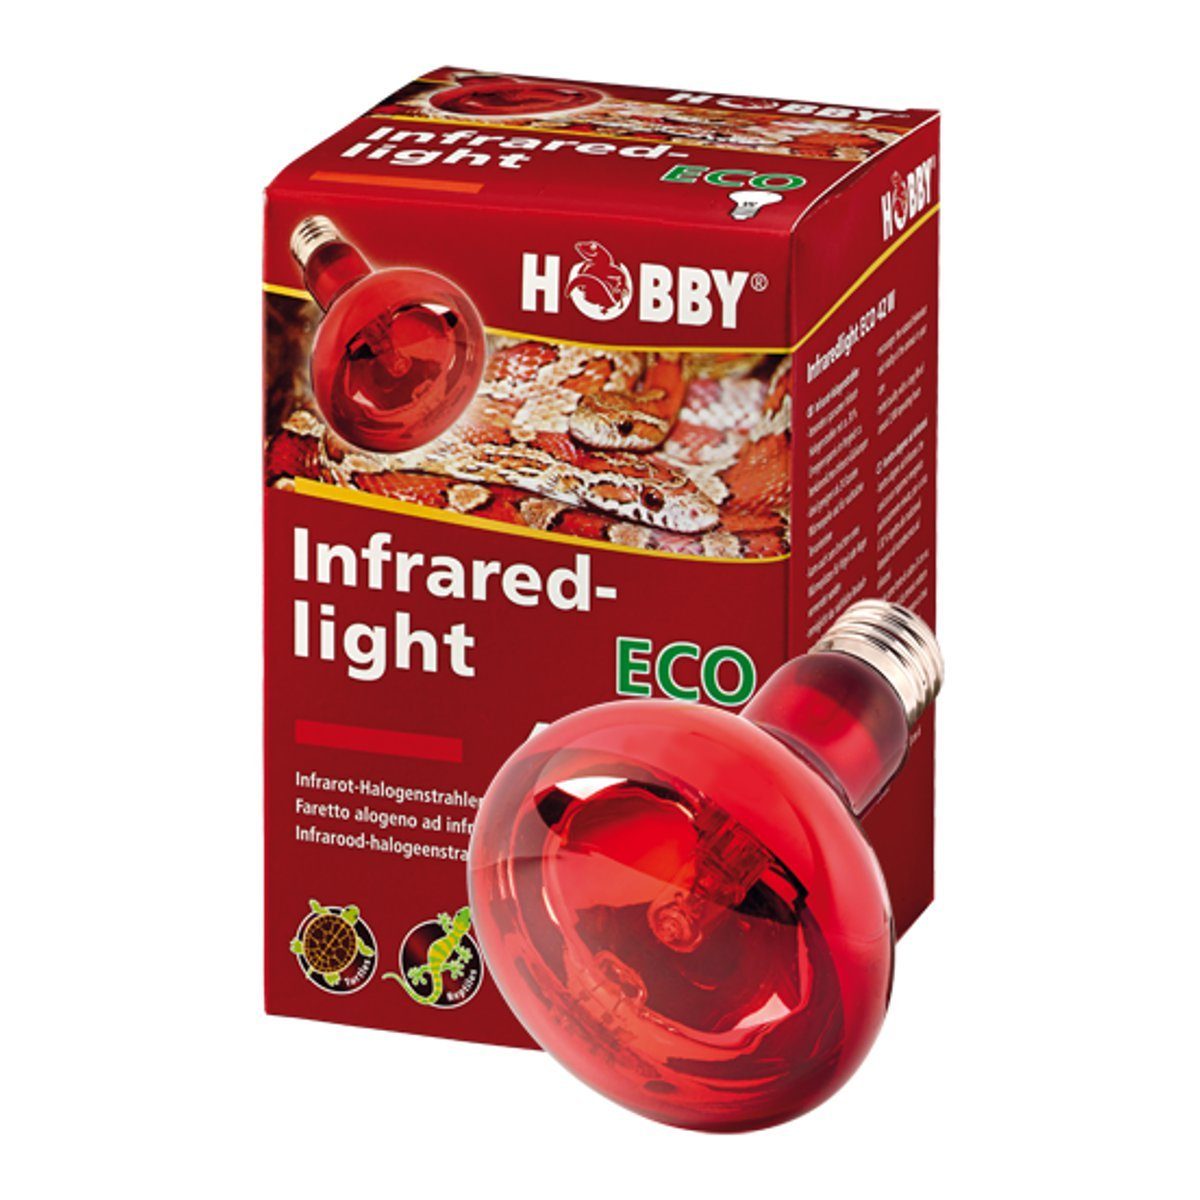 HOBBY Terrarienleuchte Hobby Infraredlight Eco, Infrarot-Halogenstrahler -  42W